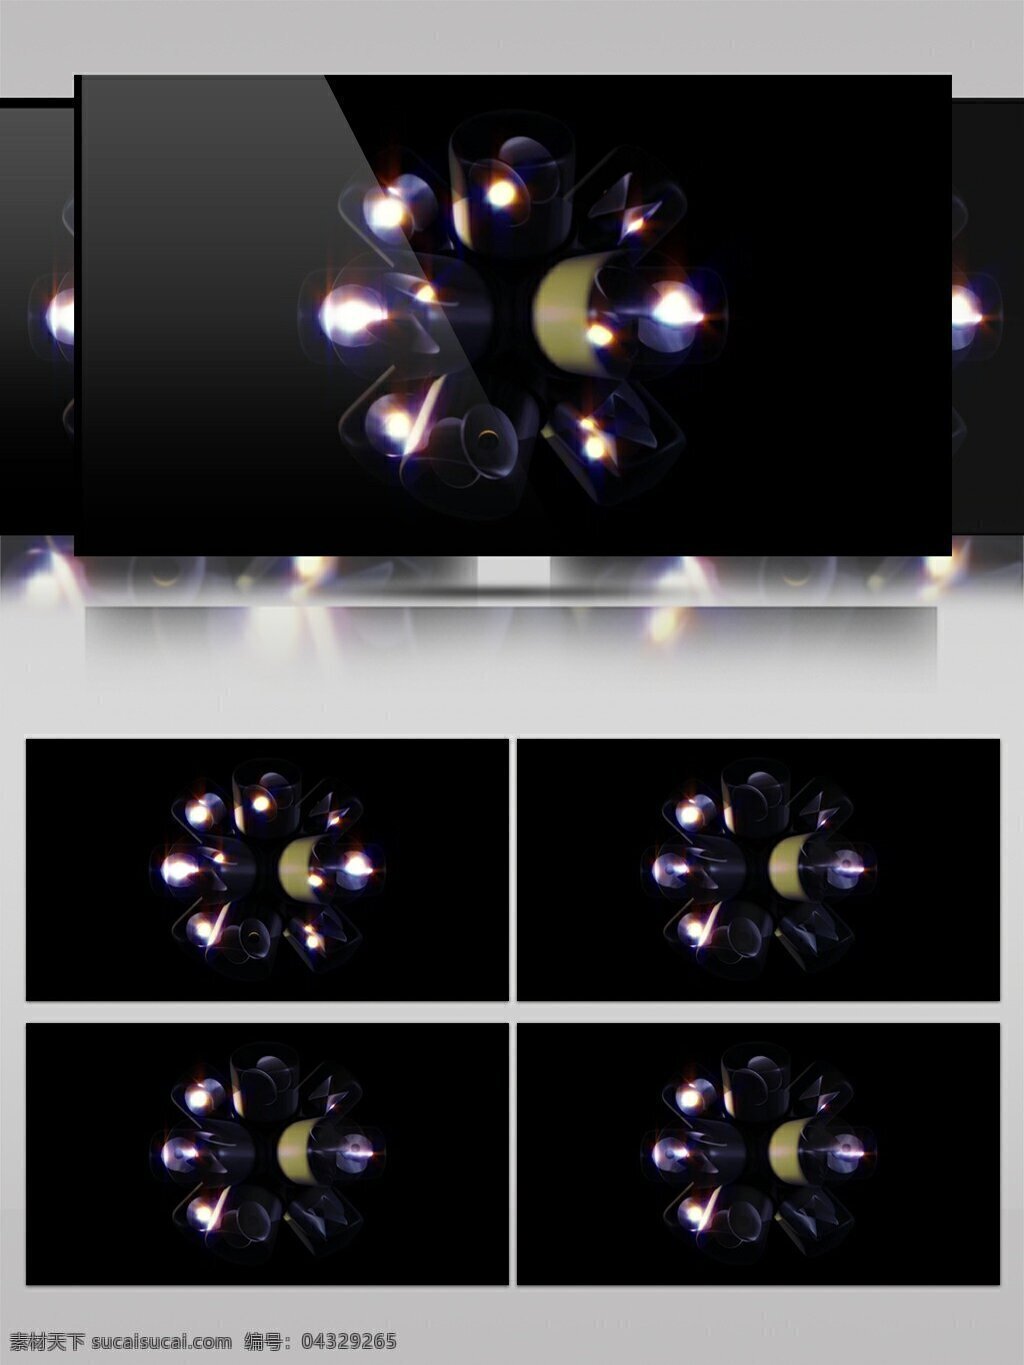 高清 美丽 常见 灯光 视频 动态视频素材 高清视频素材 花瓣形状 花朵 视频素材